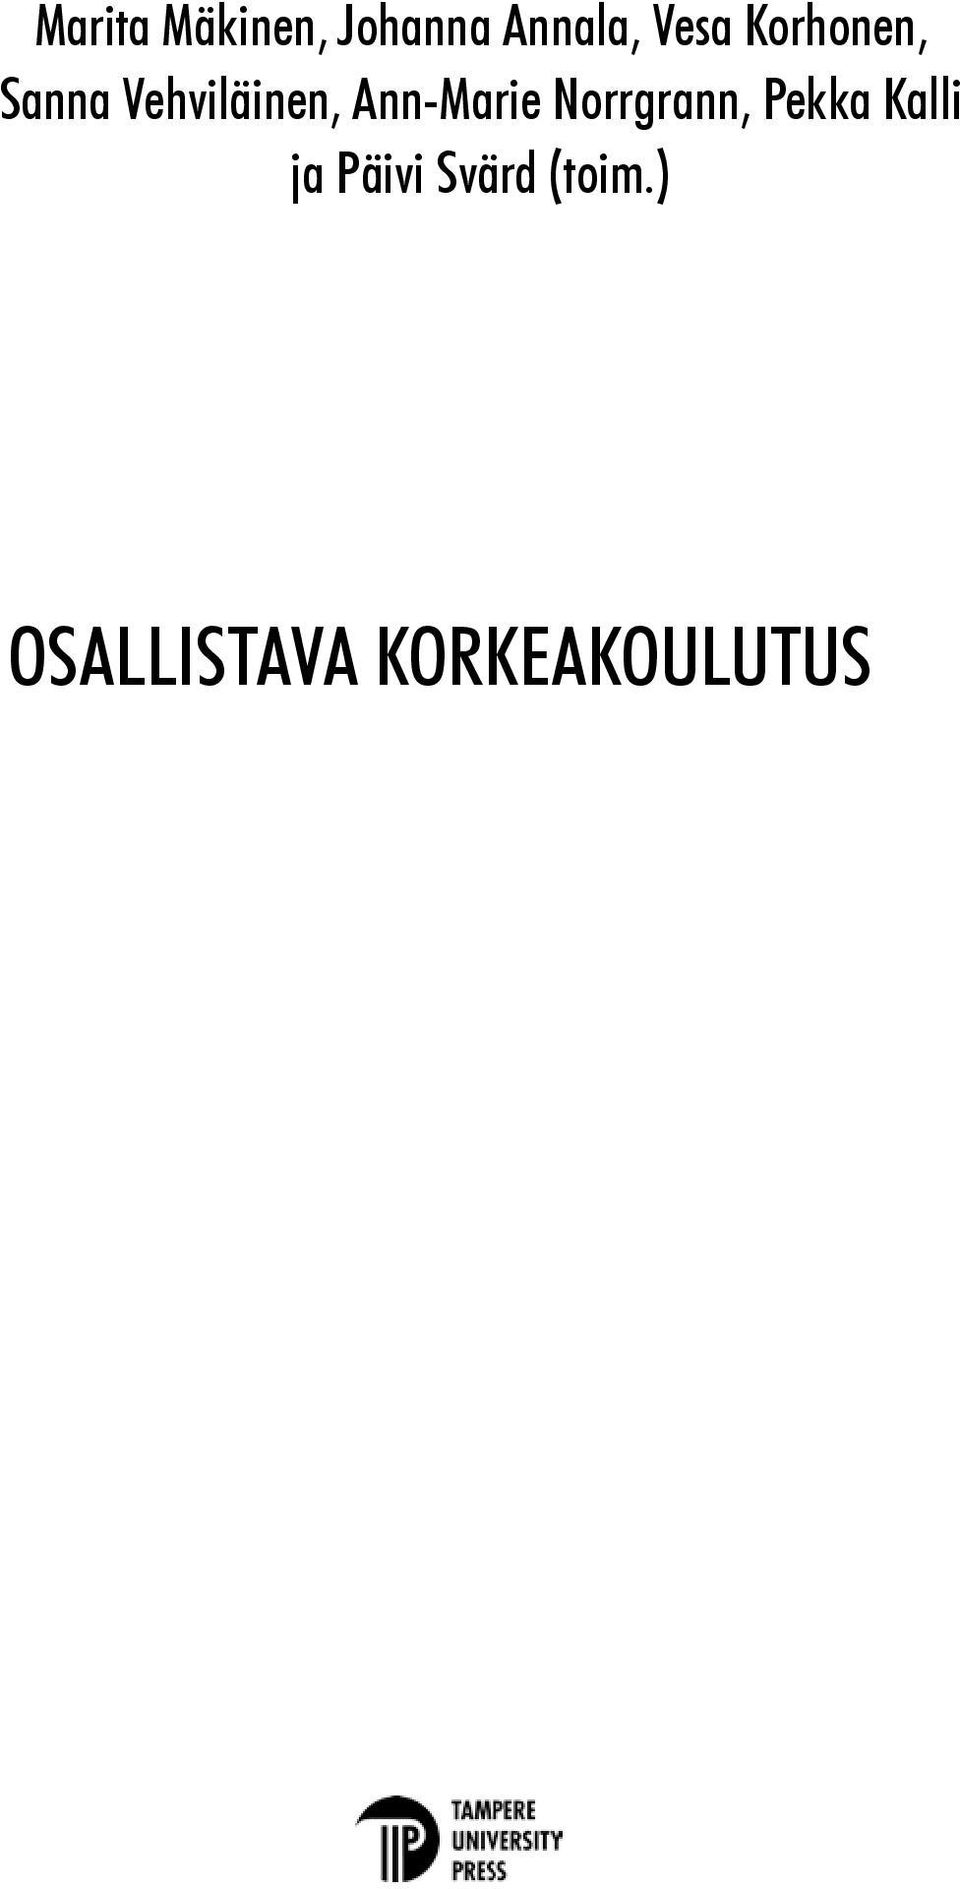 Ann-Marie Norrgrann, Pekka Kalli ja